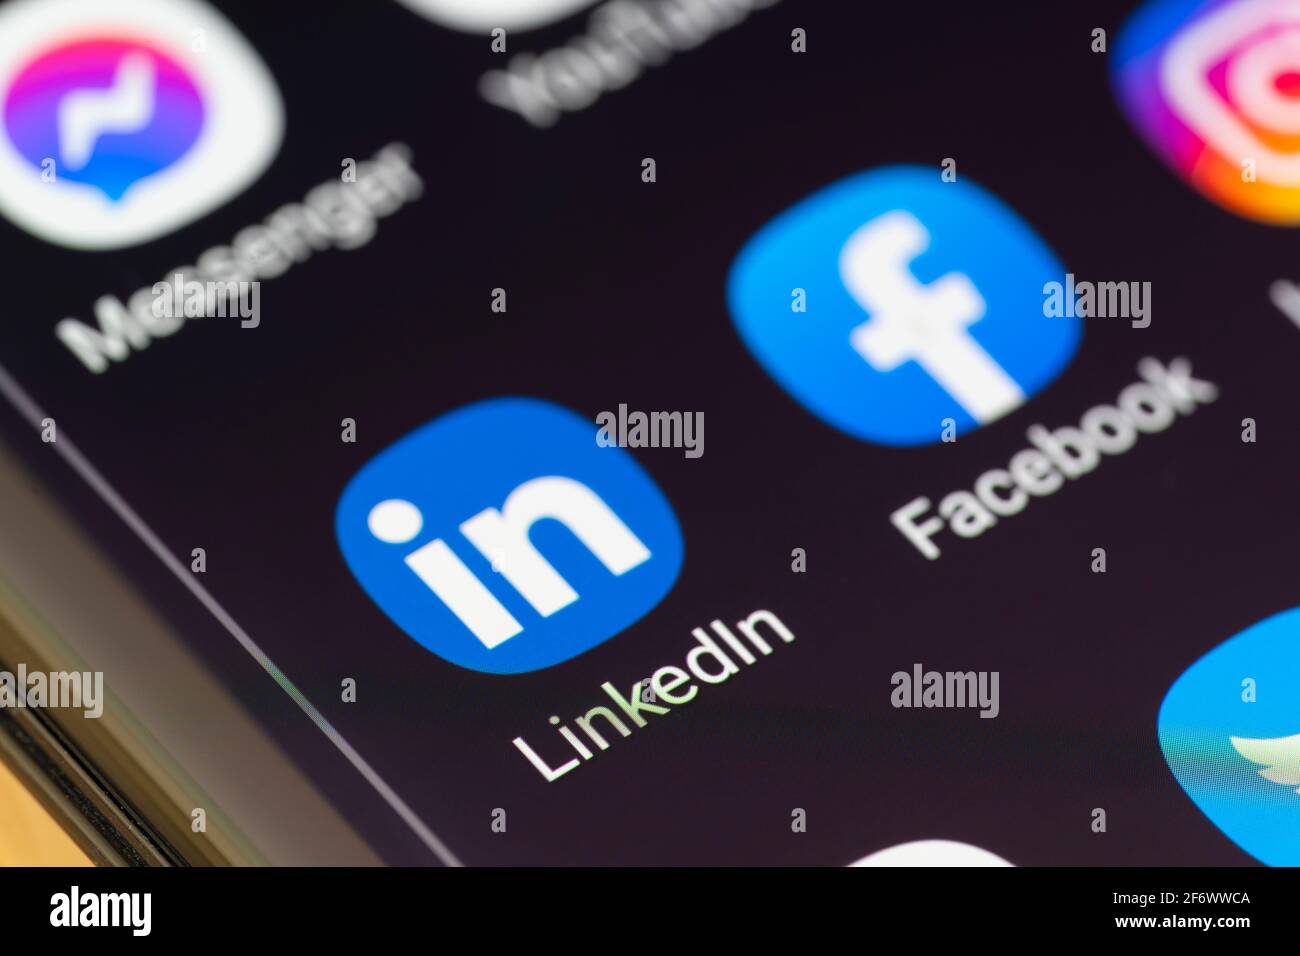 Una macro in primo piano dell'app LinkedIn sullo schermo di uno smartphone. LinkedIn è un servizio online orientato al business e all'occupazione americano Foto Stock